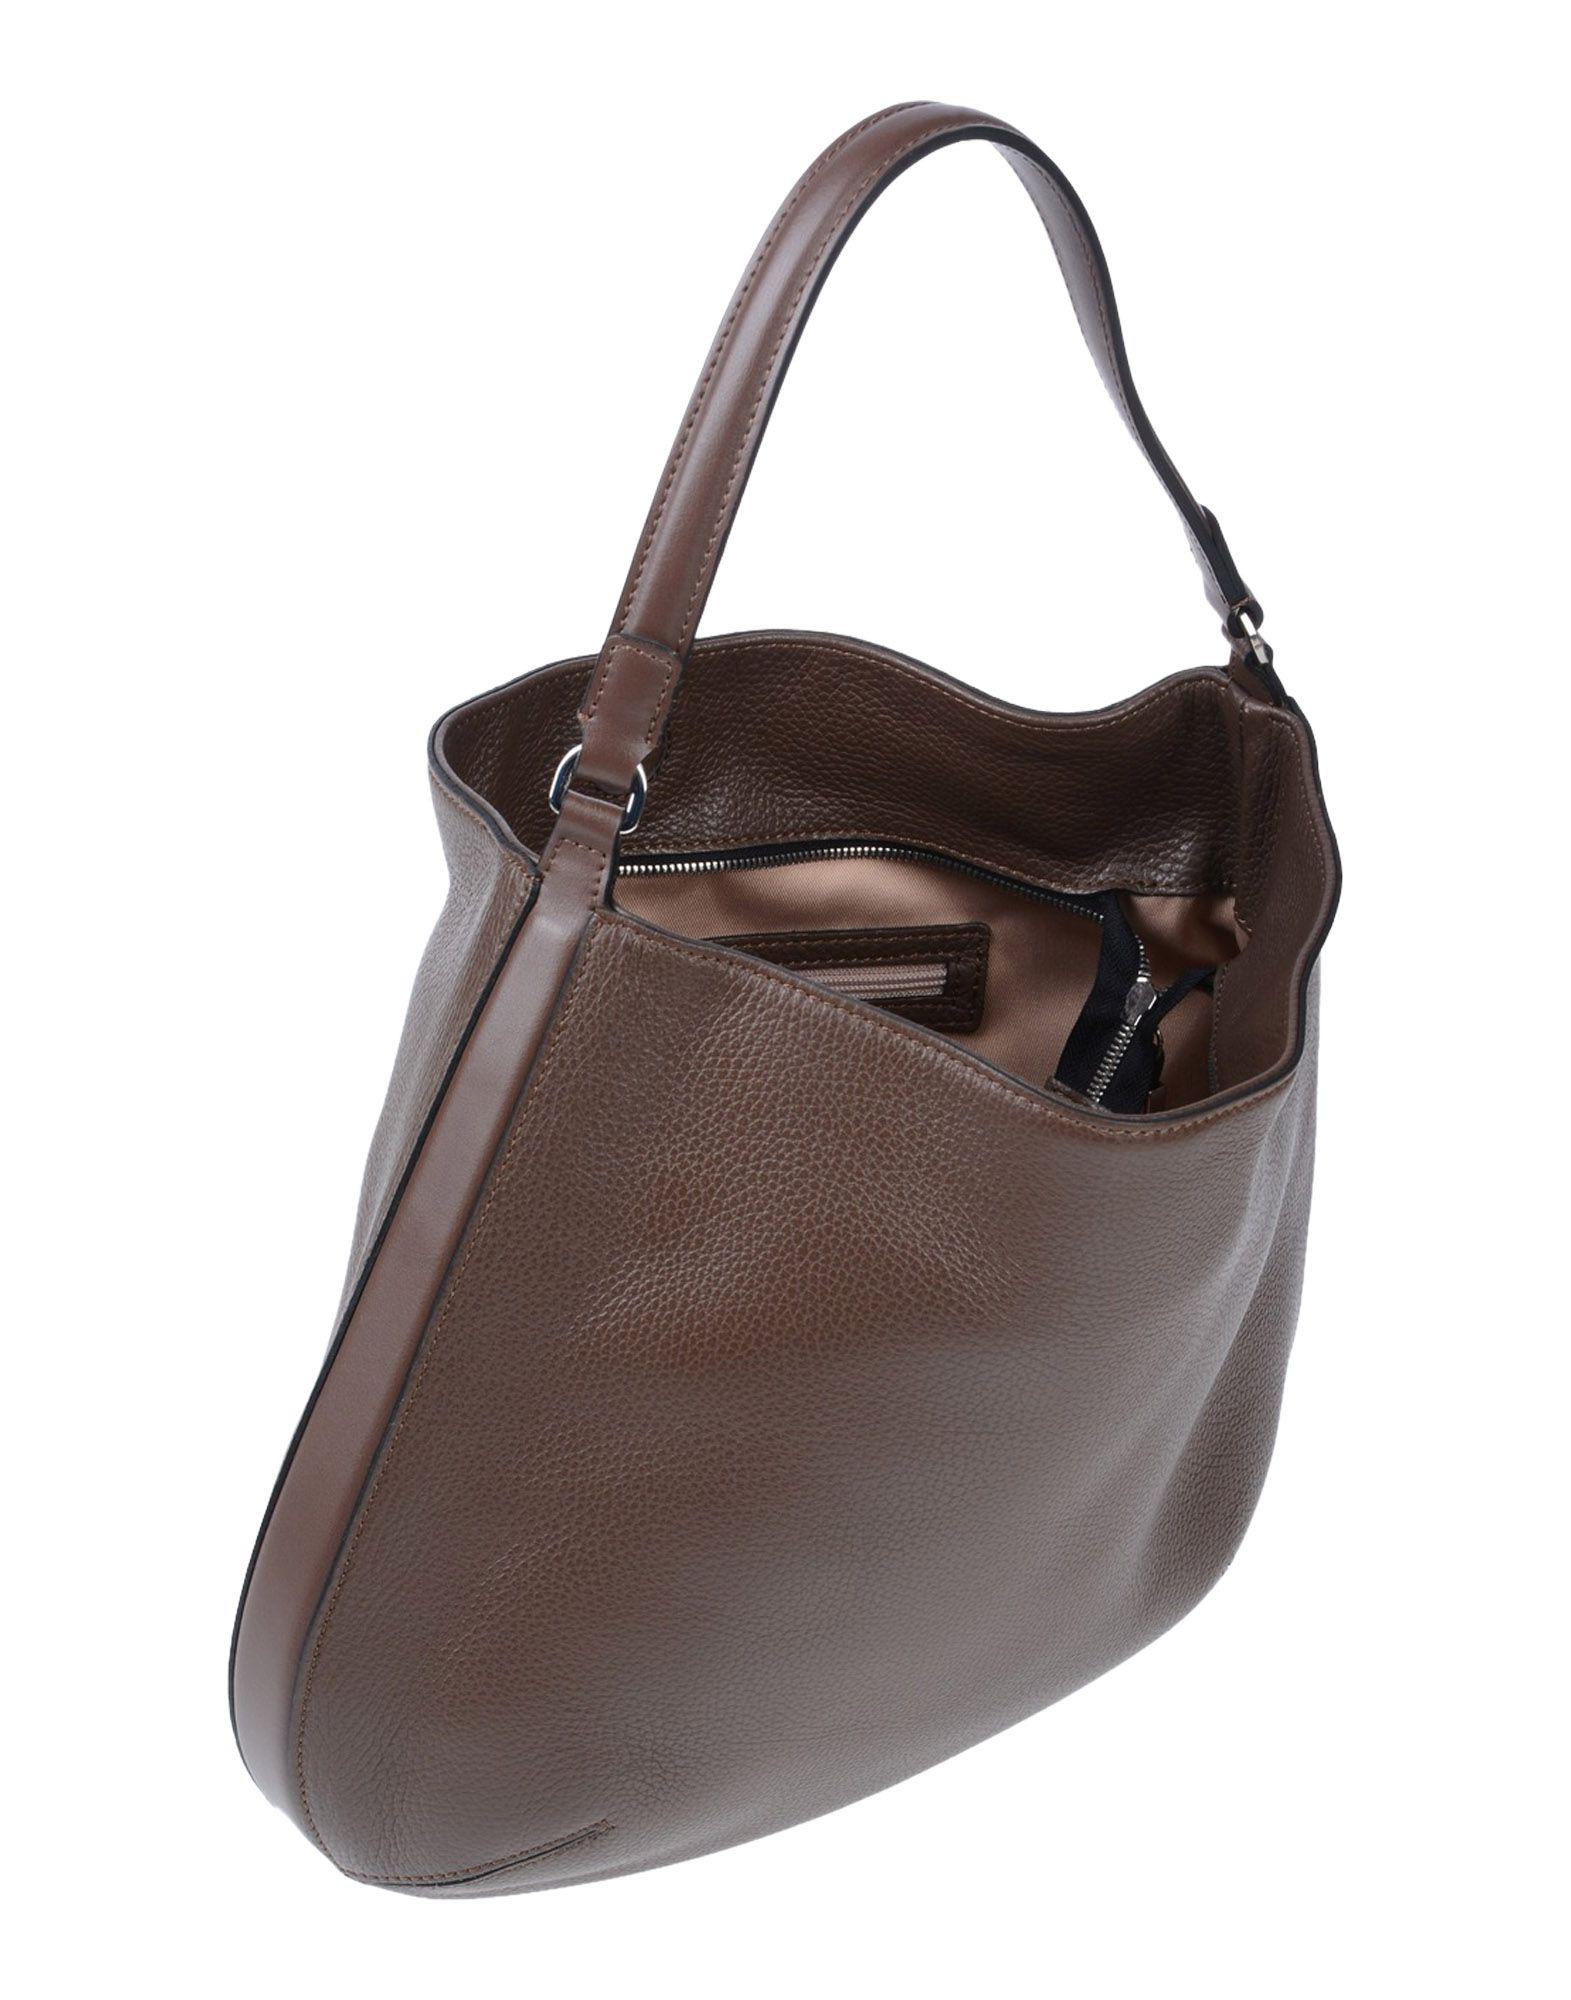 Gianni Chiarini Leather Handbag in Brown - Lyst